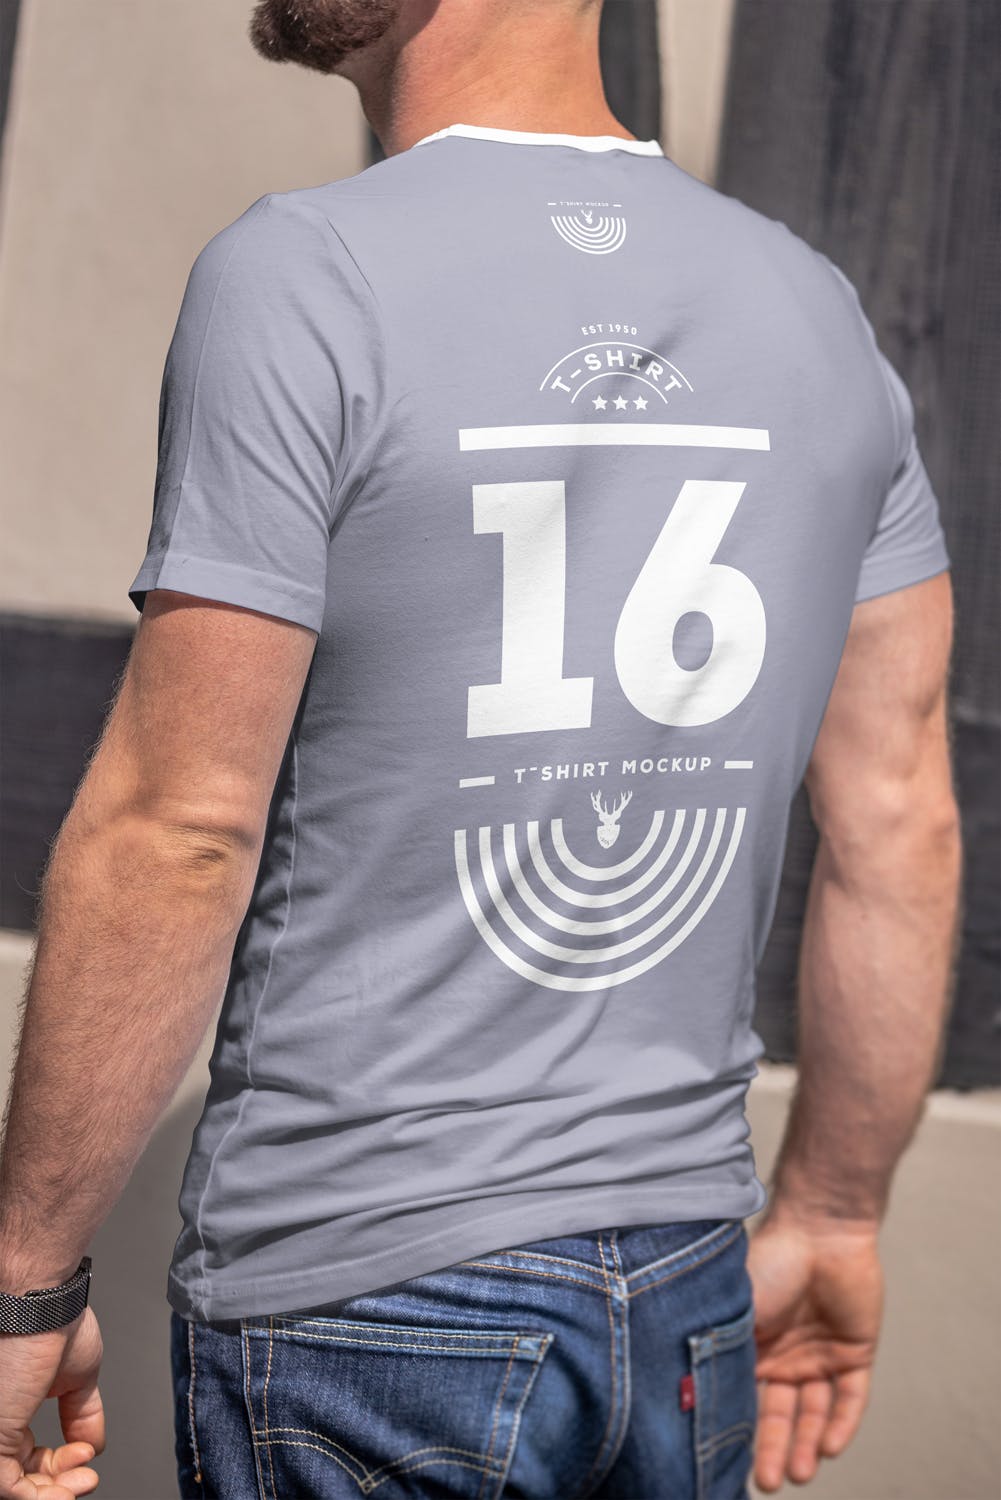 男士印花T恤真实模特上身效果图样机16设计网精选模板 T-Shirt Mock-up 5插图(9)